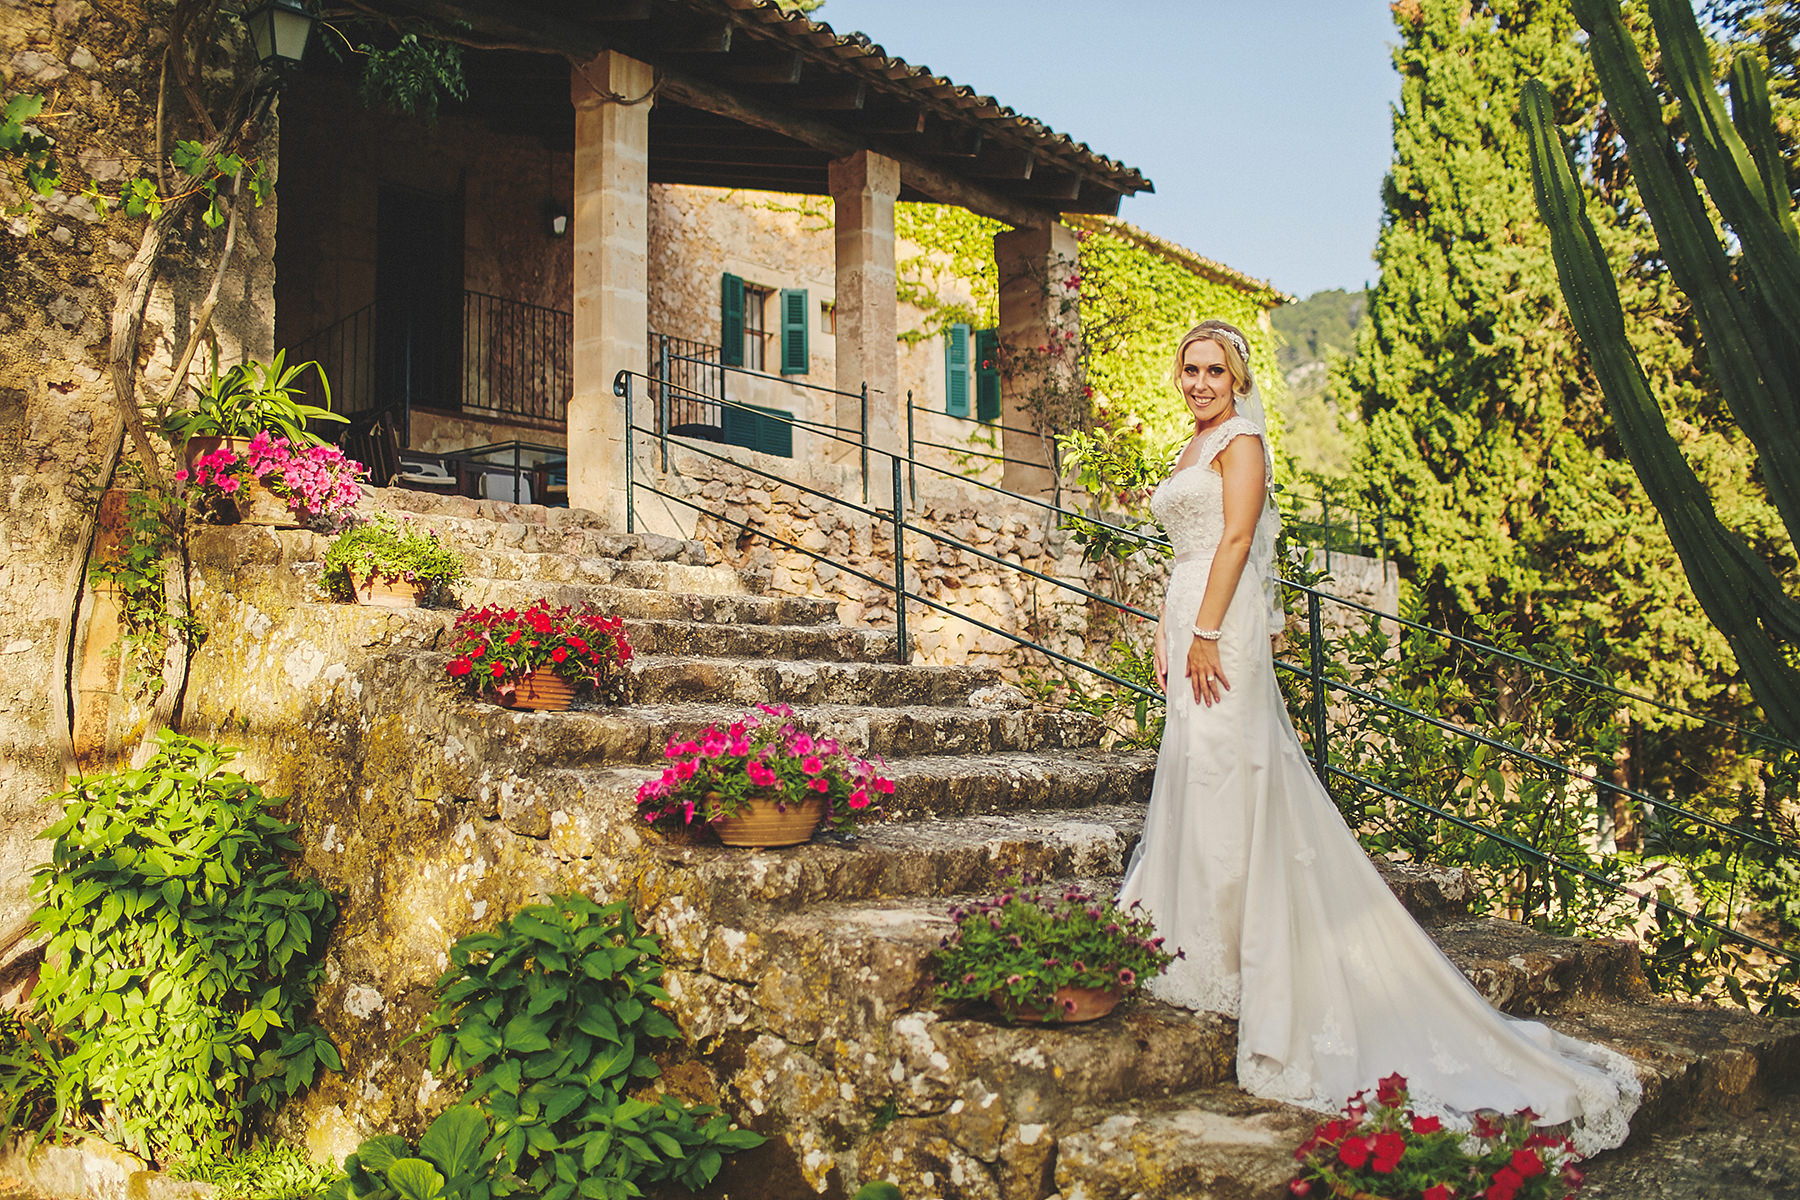 Destination wedding in a magical Mallorca